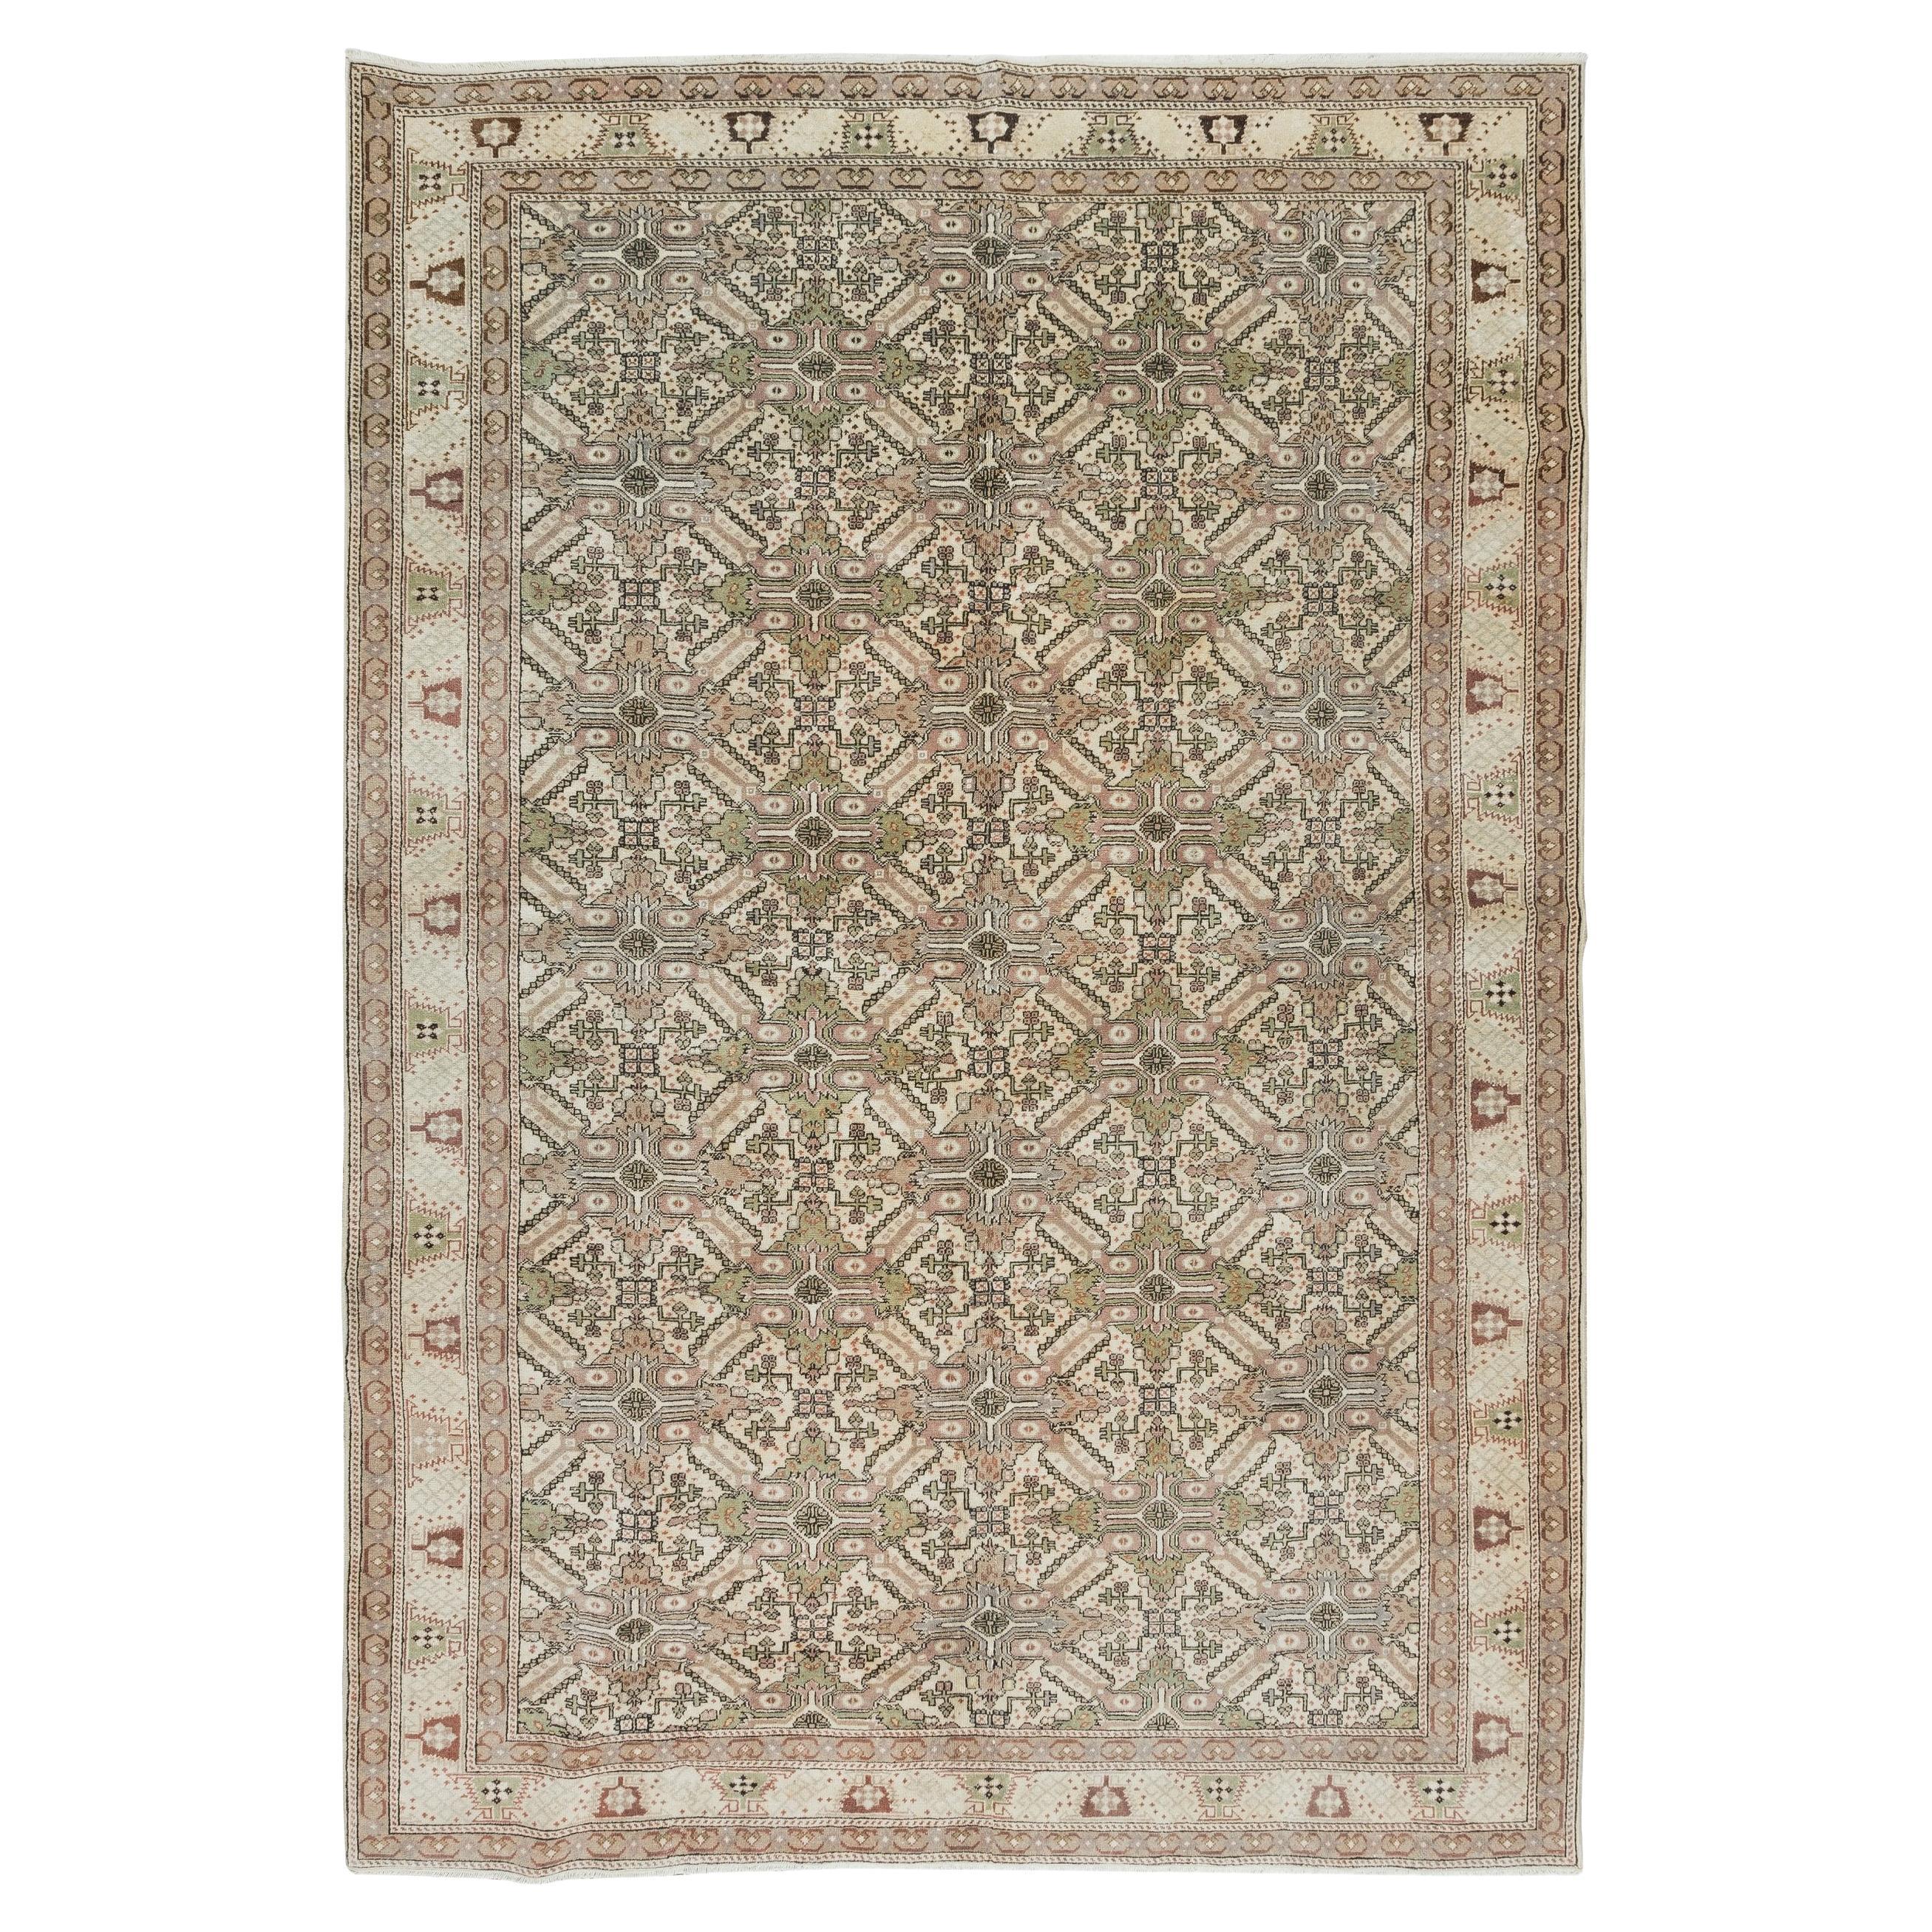 6.3x9.4 Ft Handgefertigter türkischer Teppich, Vintage-Teppich aus geblümter Wolle